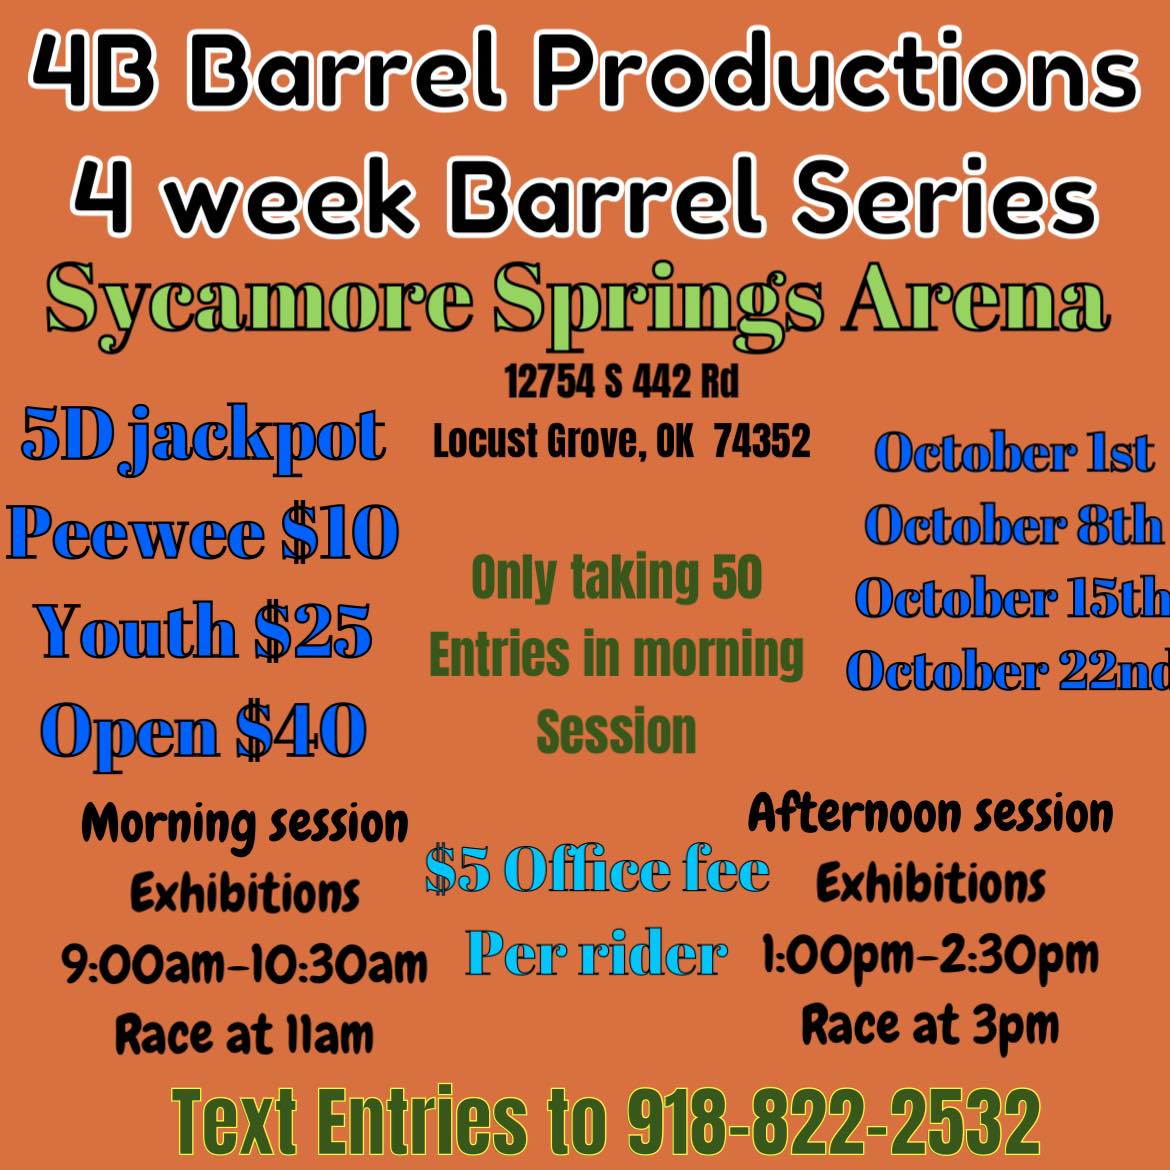 4B Barrel Productions